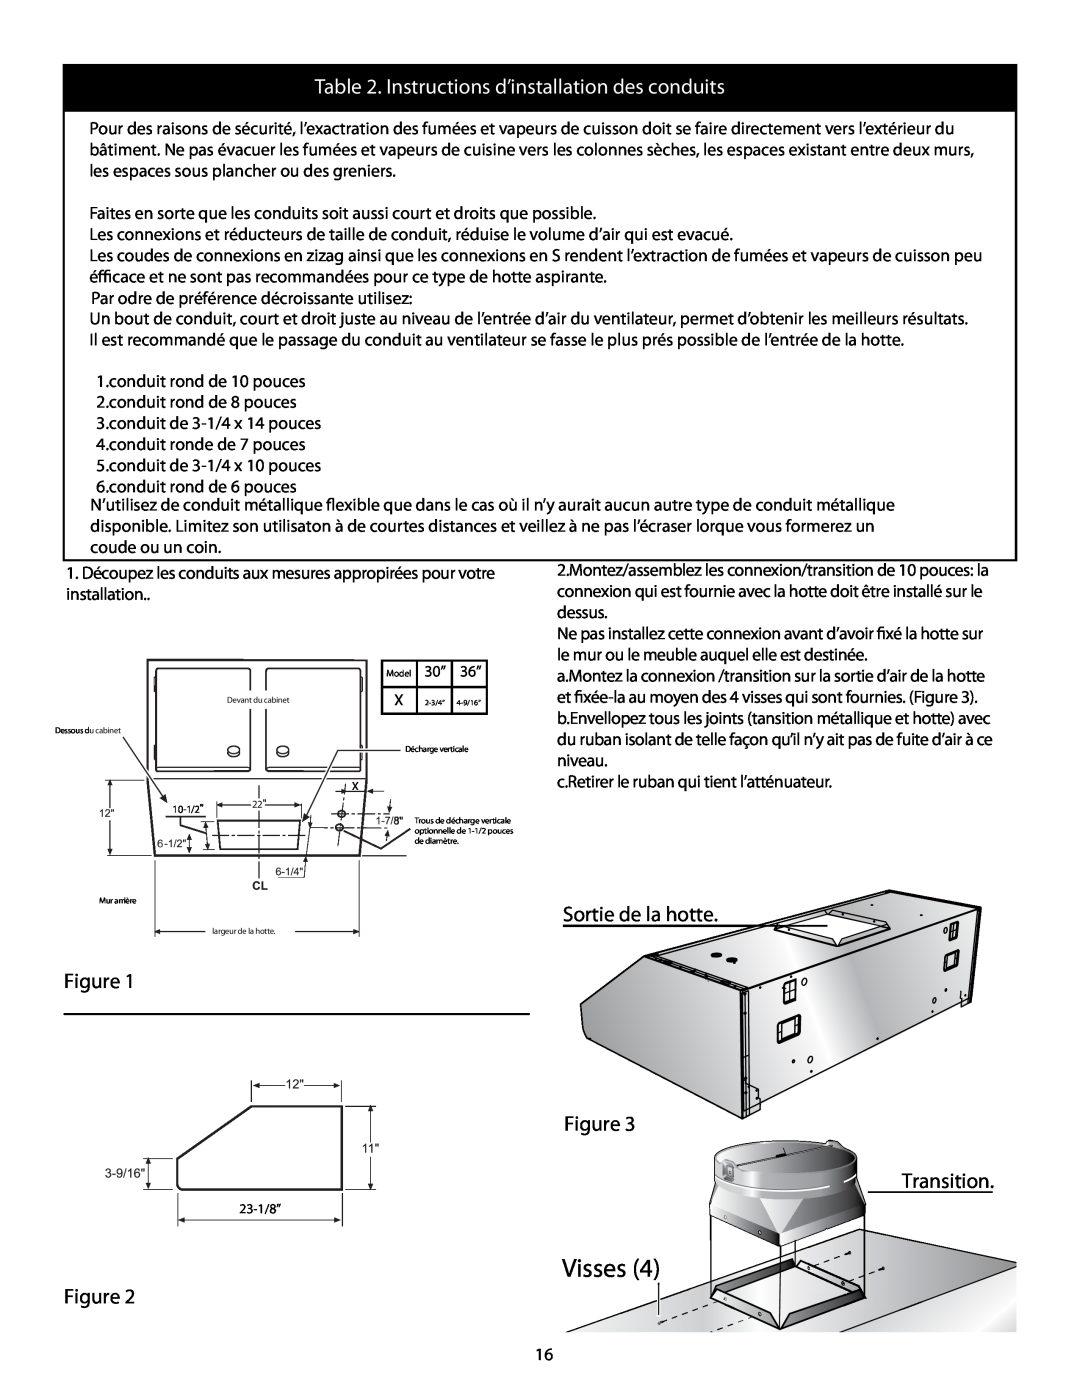 Thermador HMWB36, HMWB30 installation manual Visses, Instructions d’installation des conduits 